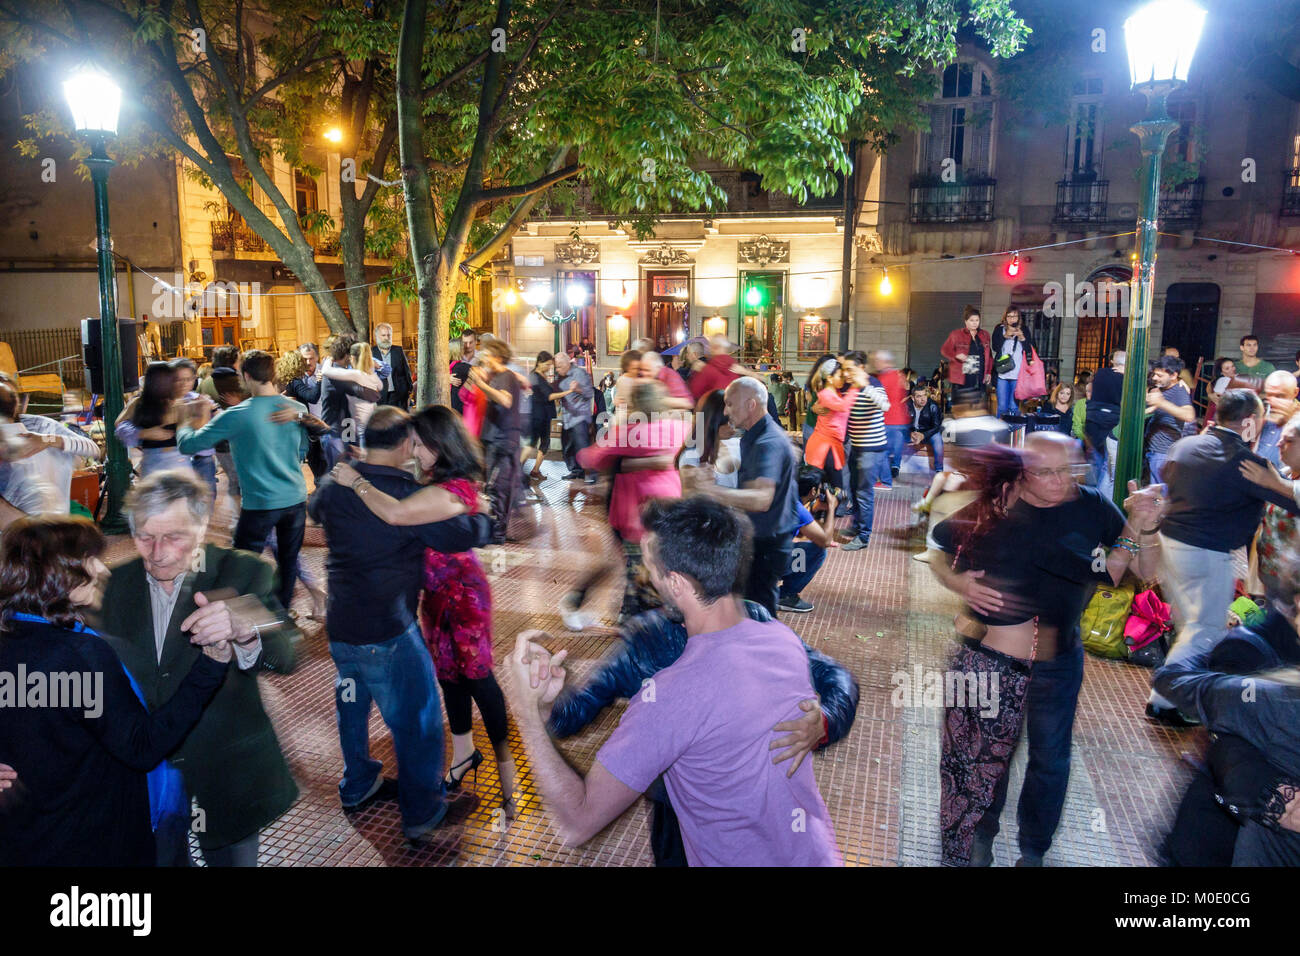 Buenos Aires Argentina,San Telmo,Plaza Dorrego,soirée de nuit,danseuses tango,danse,homme hommes,femme femmes,couple,audience,spectacle,hispanique Banque D'Images